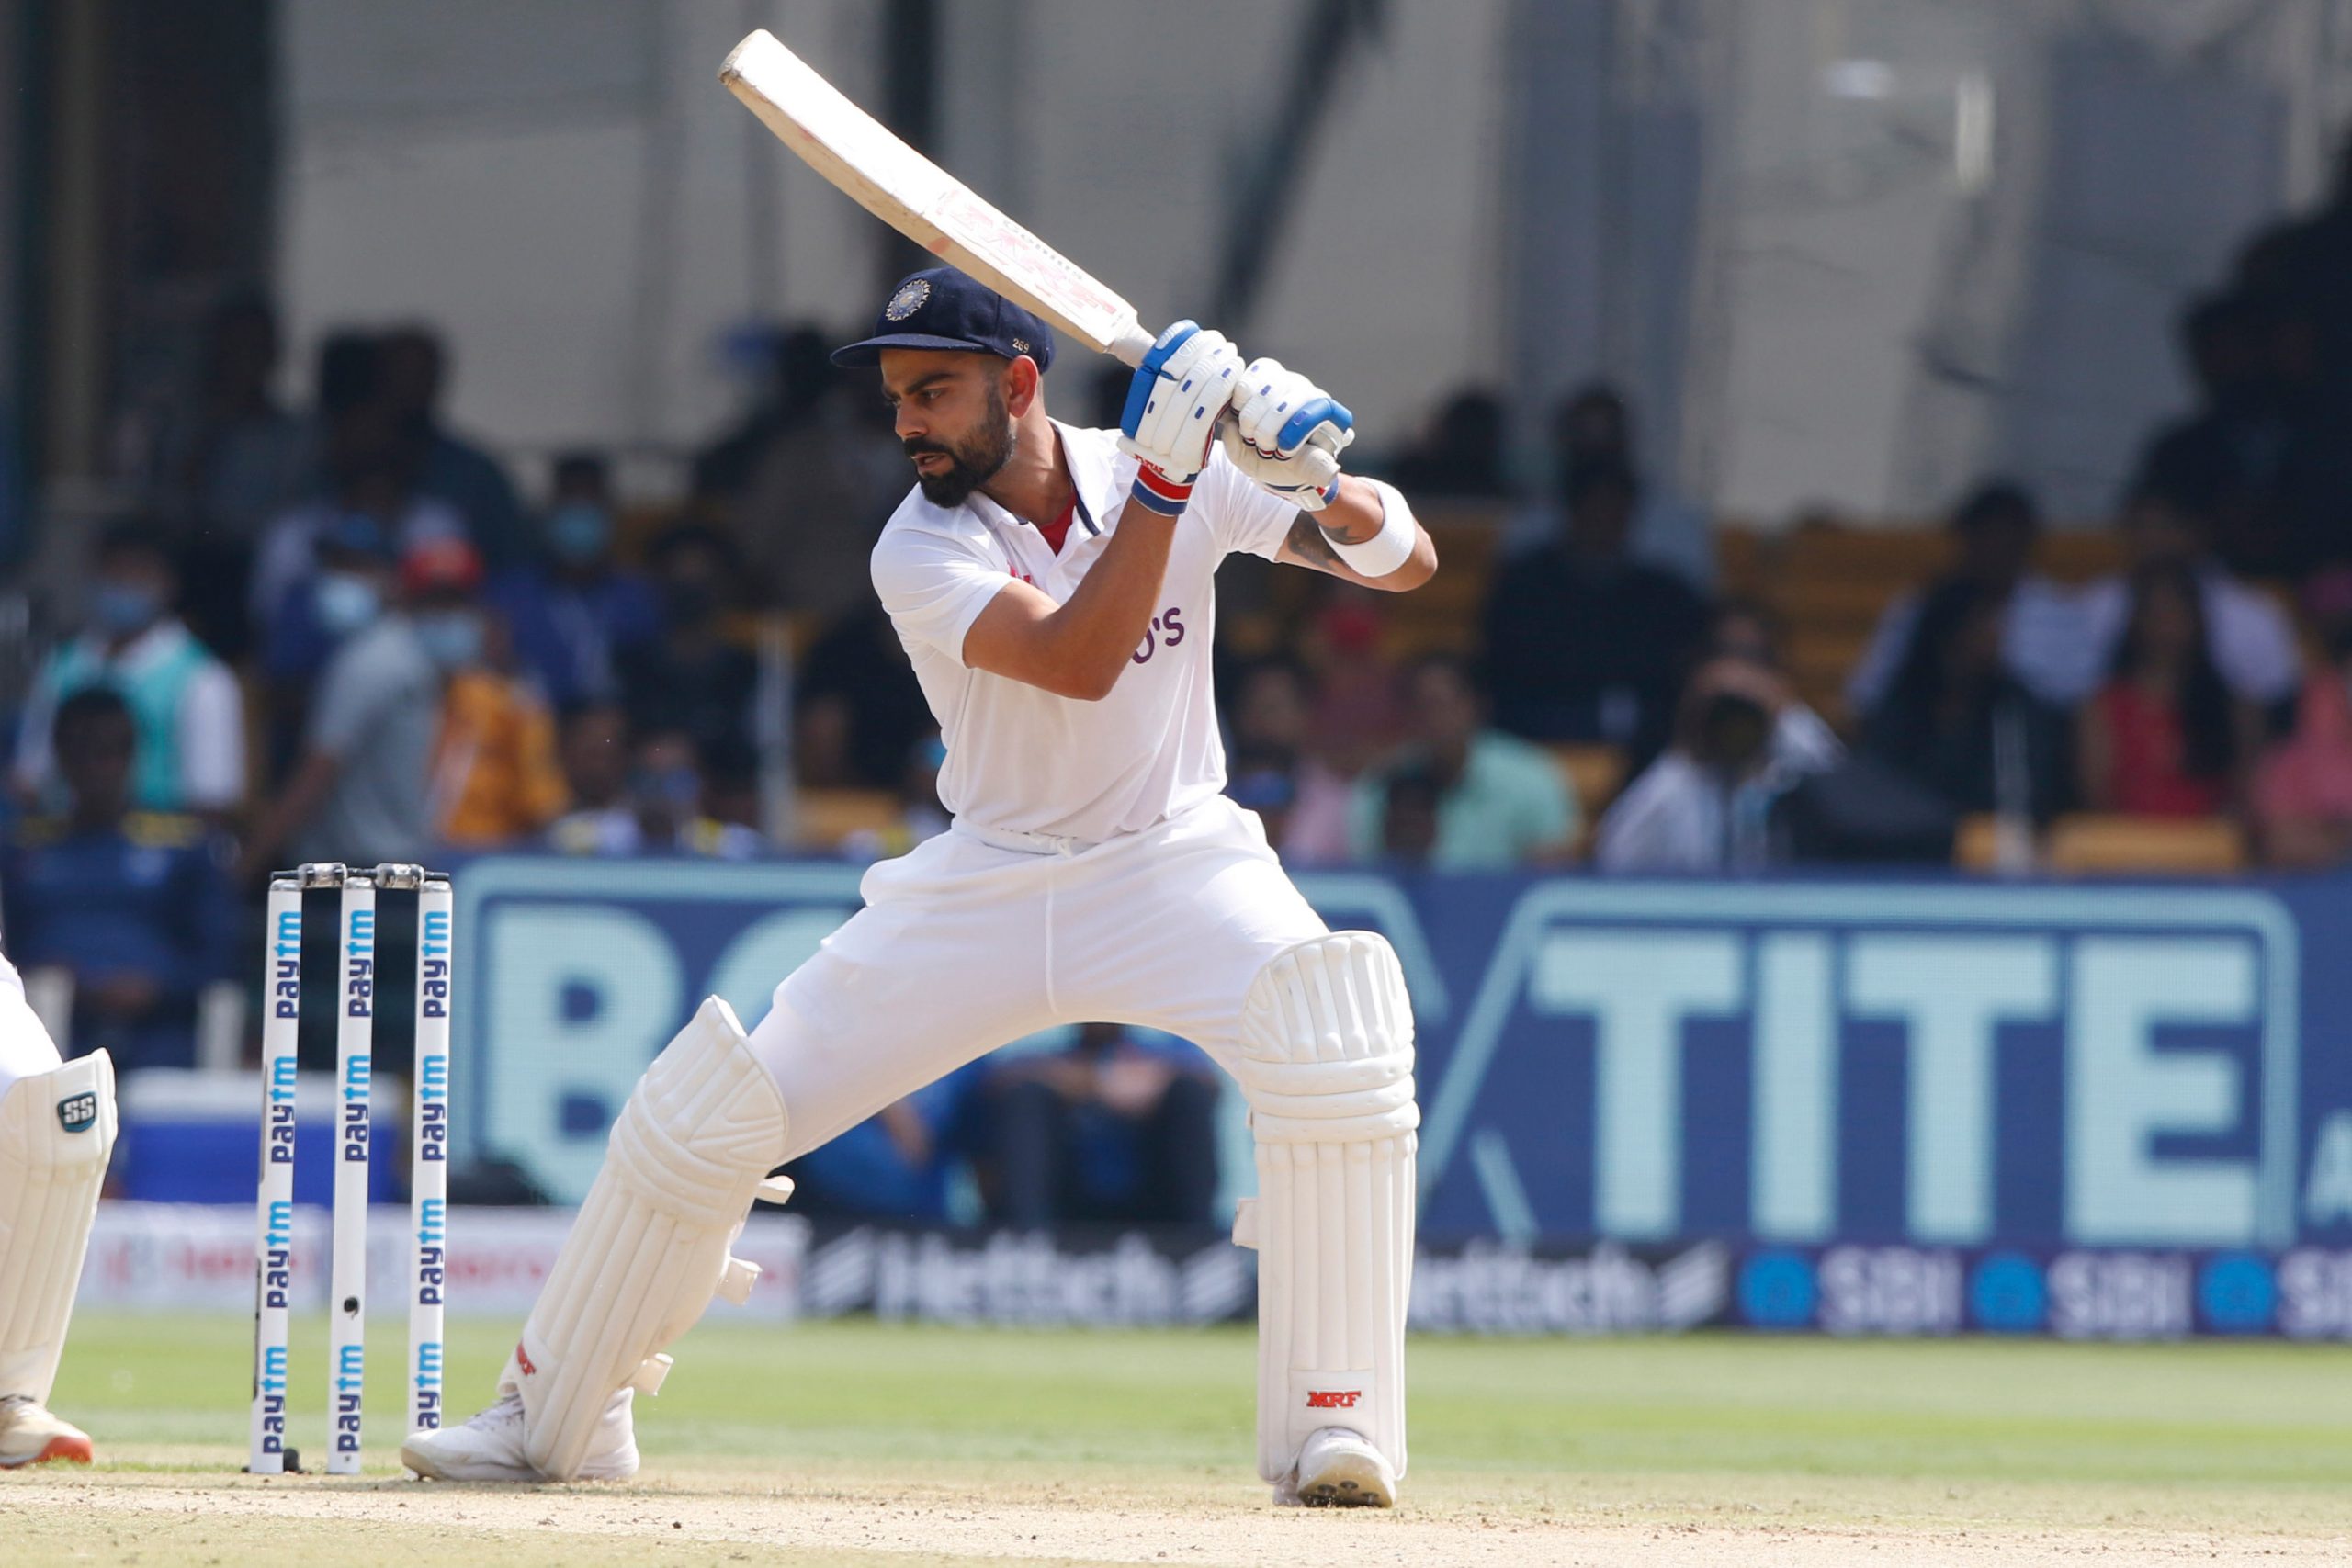 Gavaskar on Kohli’s dismissal vs Sri Lanka: He played across pad